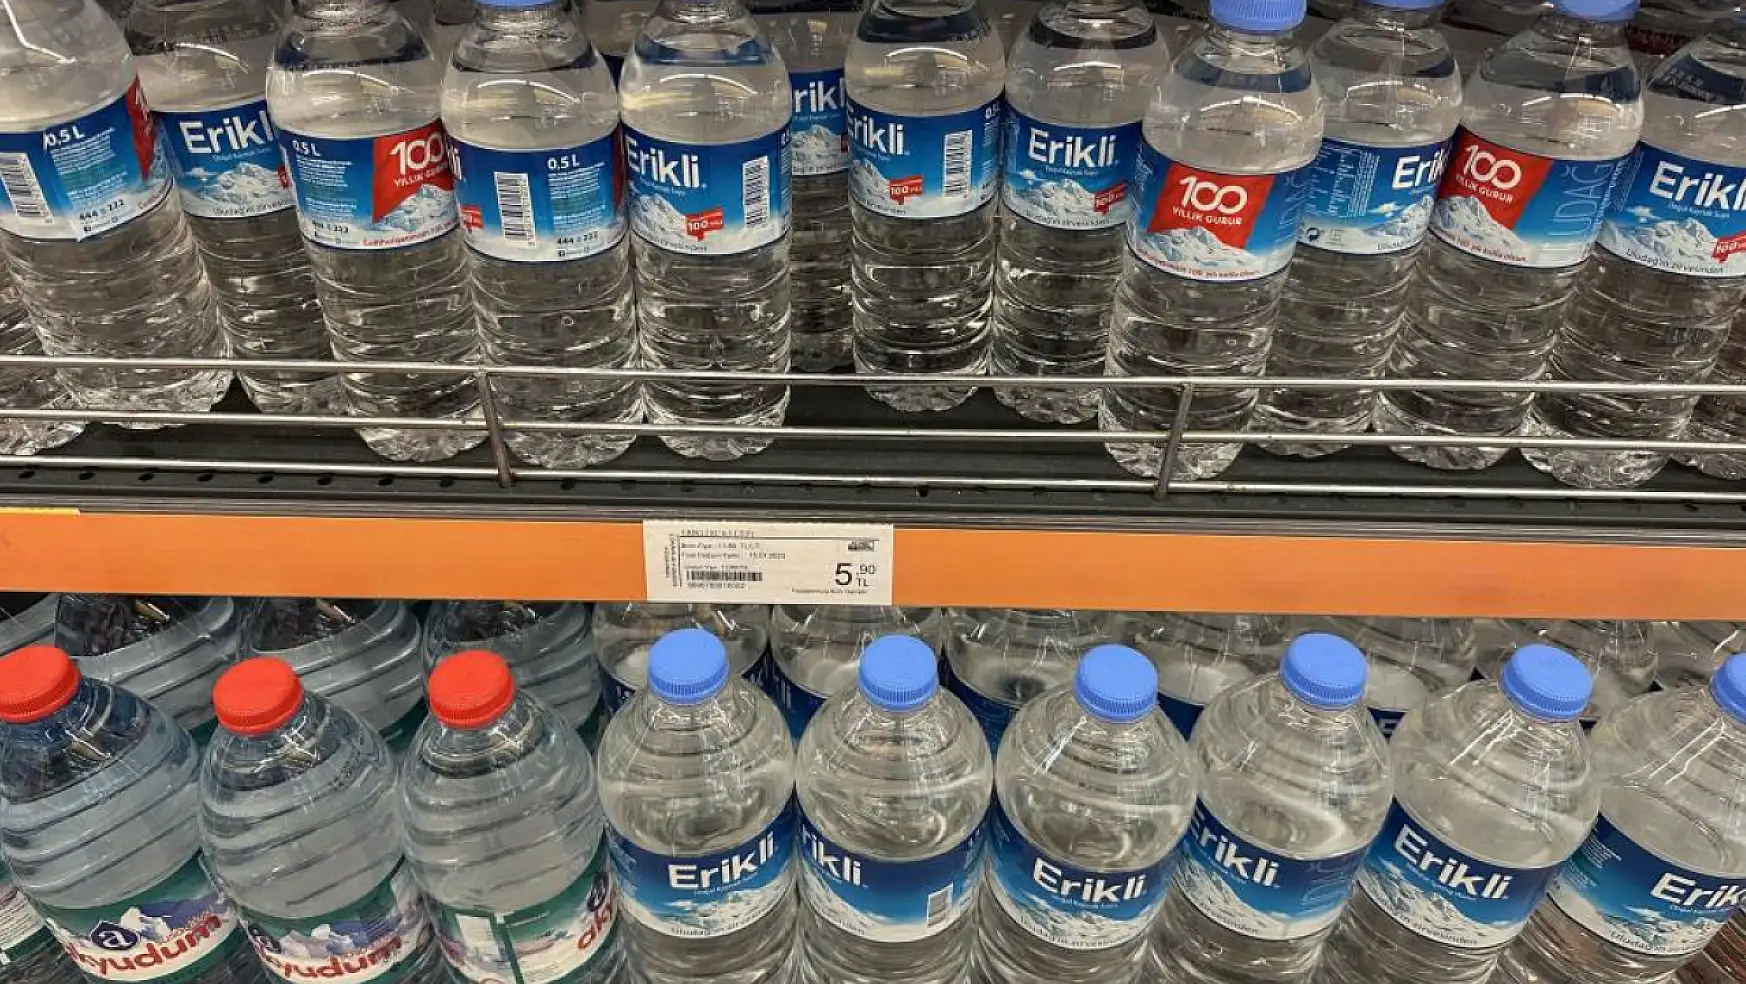 İçme suyu fiyatlarına vatandaş tepkili! Marketlerde fiyatlar birbirini tutmuyor!